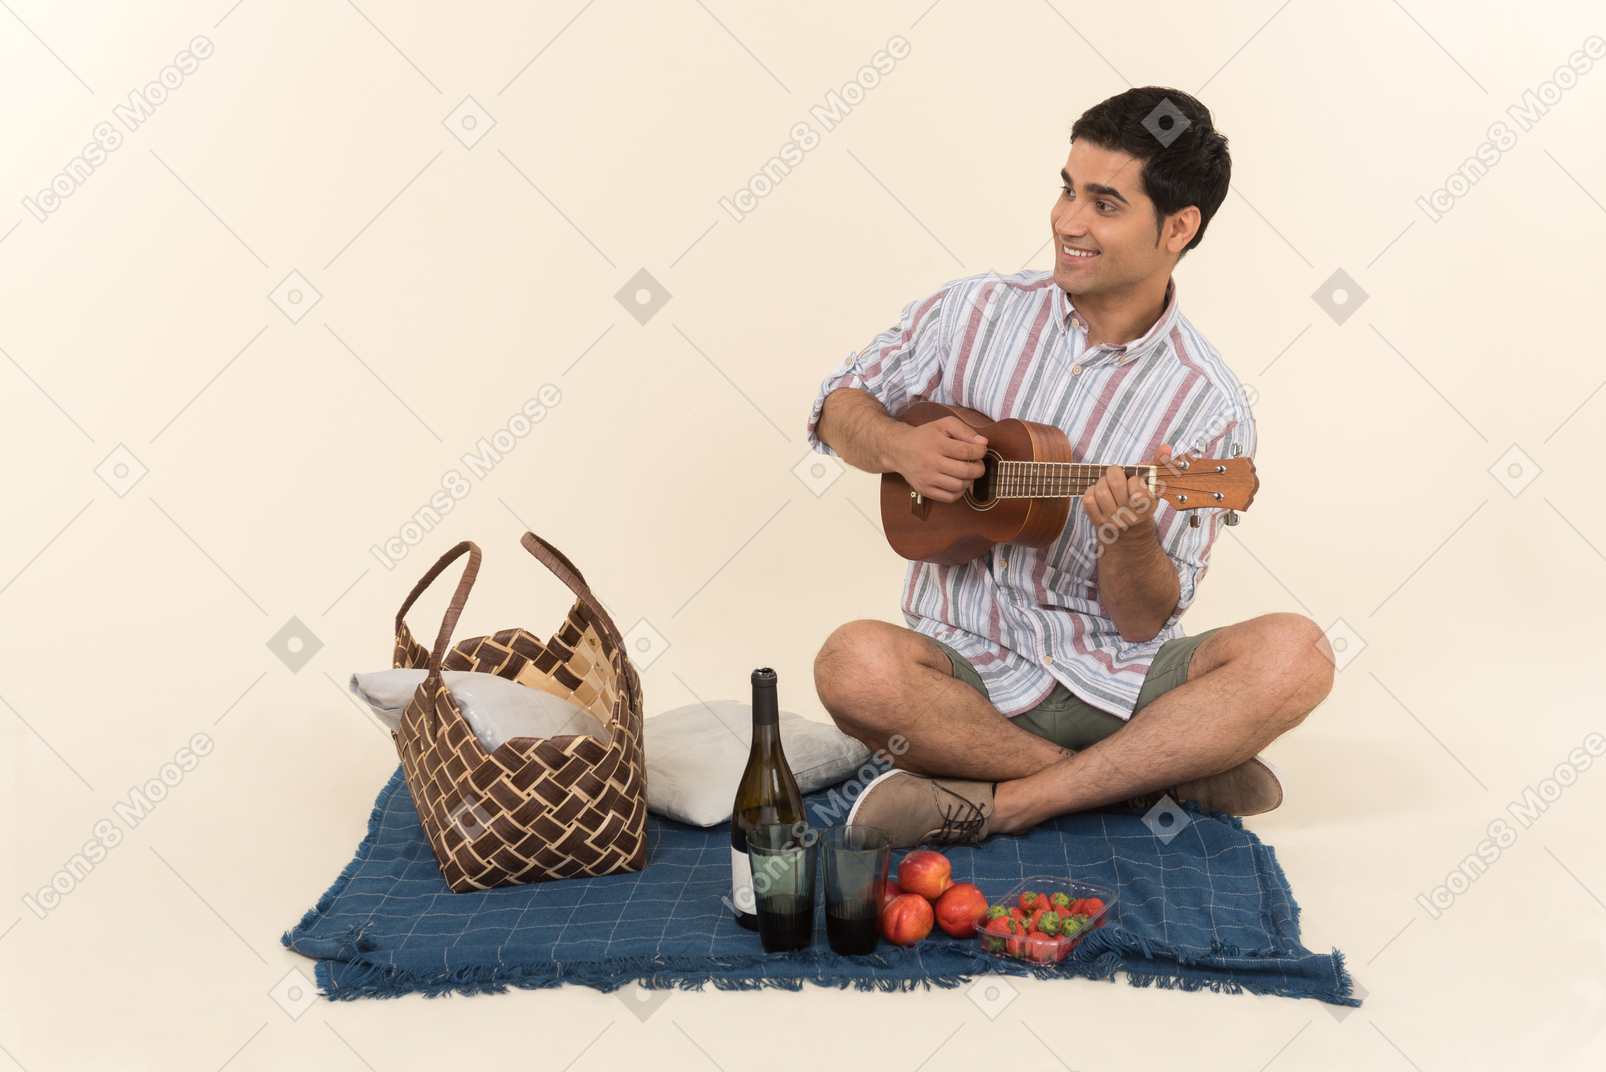 Junger kaukasischer kerl, der auf decke sitzt und kleine gitarre spielt